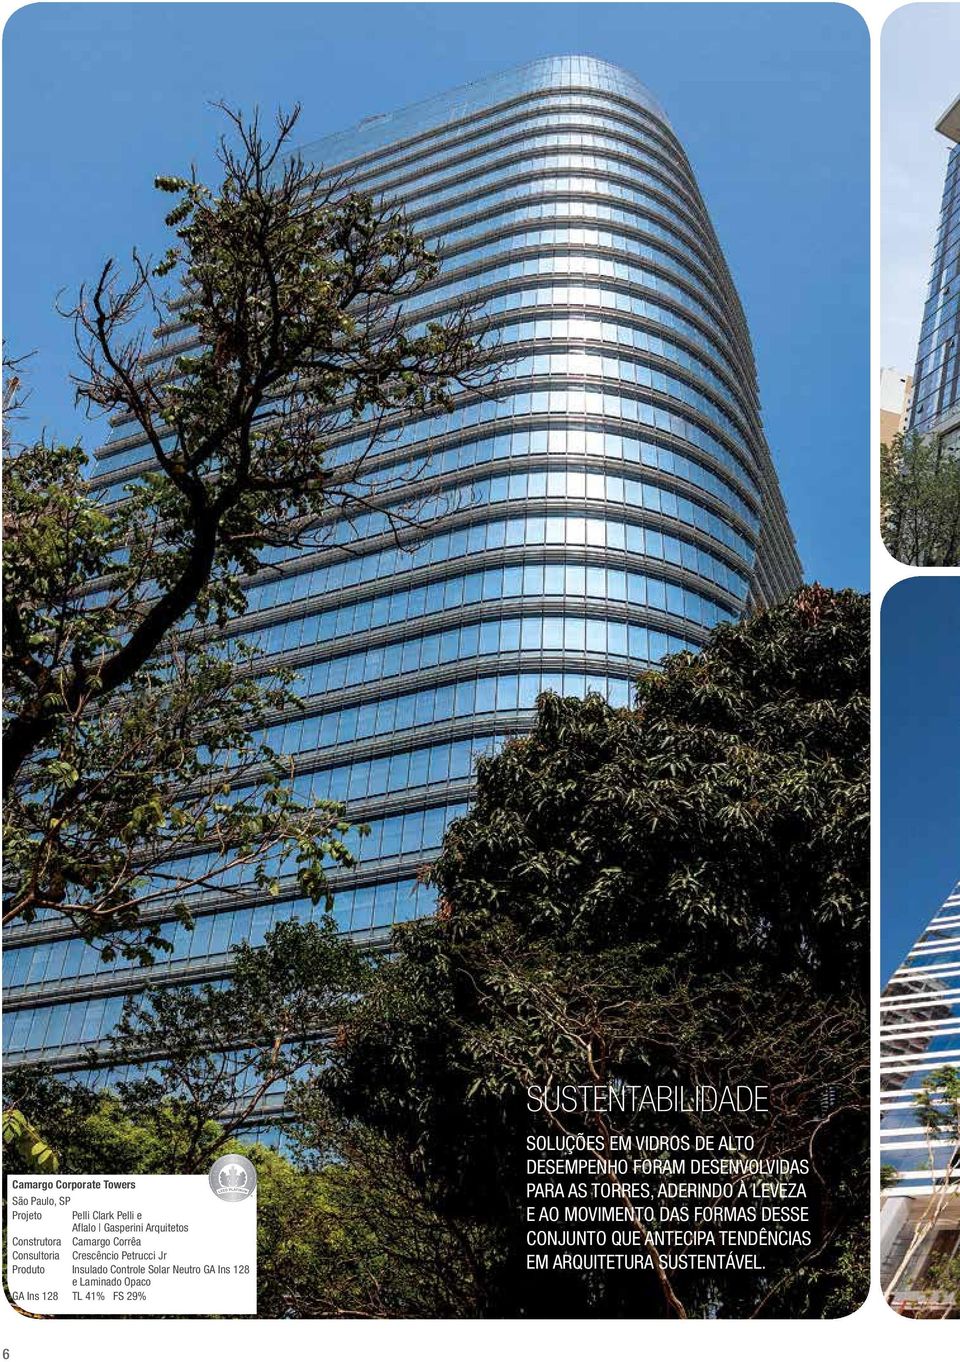 128 TL 41% FS 29% Sustentabilidade Soluções em vidros de alto desempenho foram desenvolvidas para as torres,